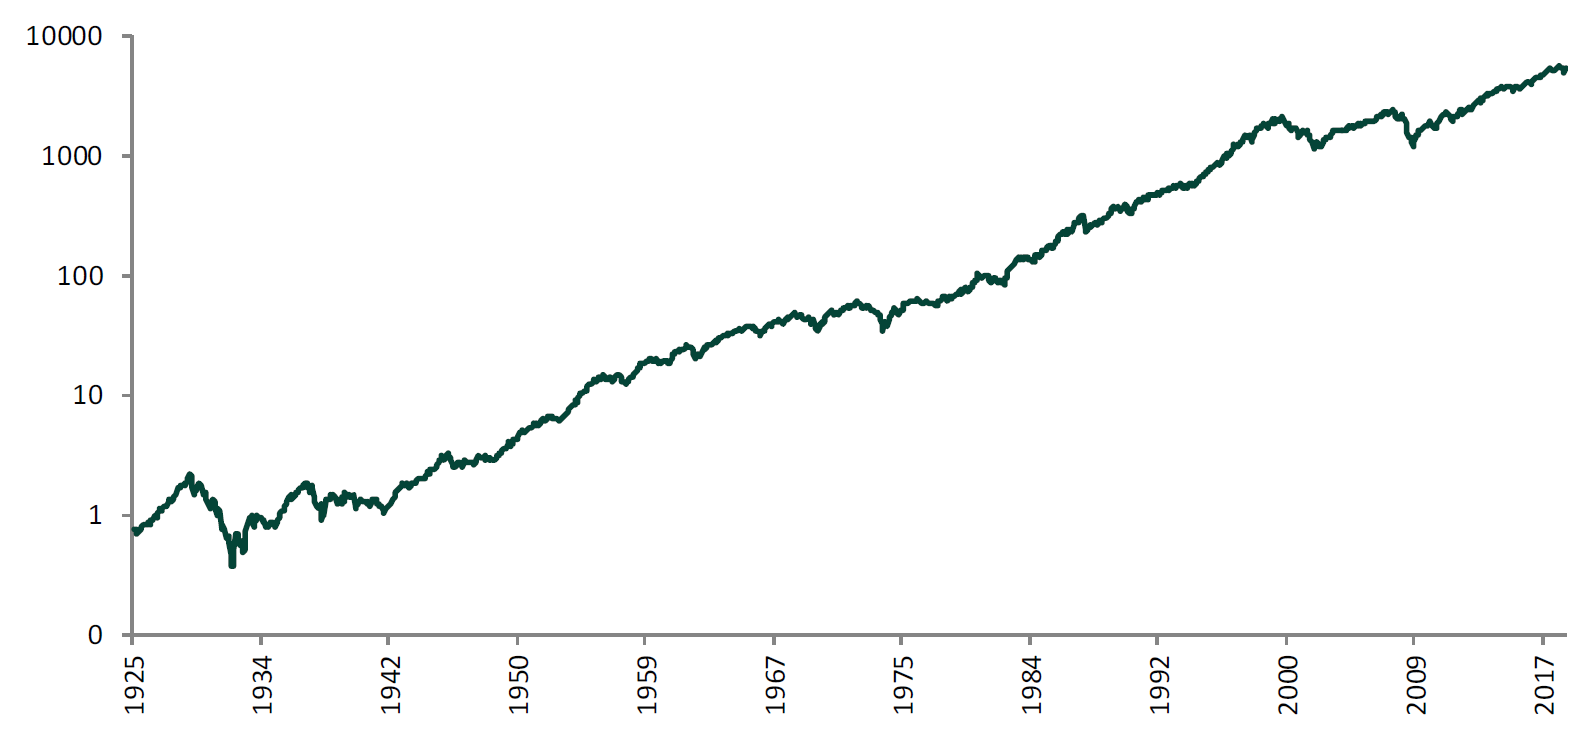 Gráfico S&P 500 total return en escala logarítmica 